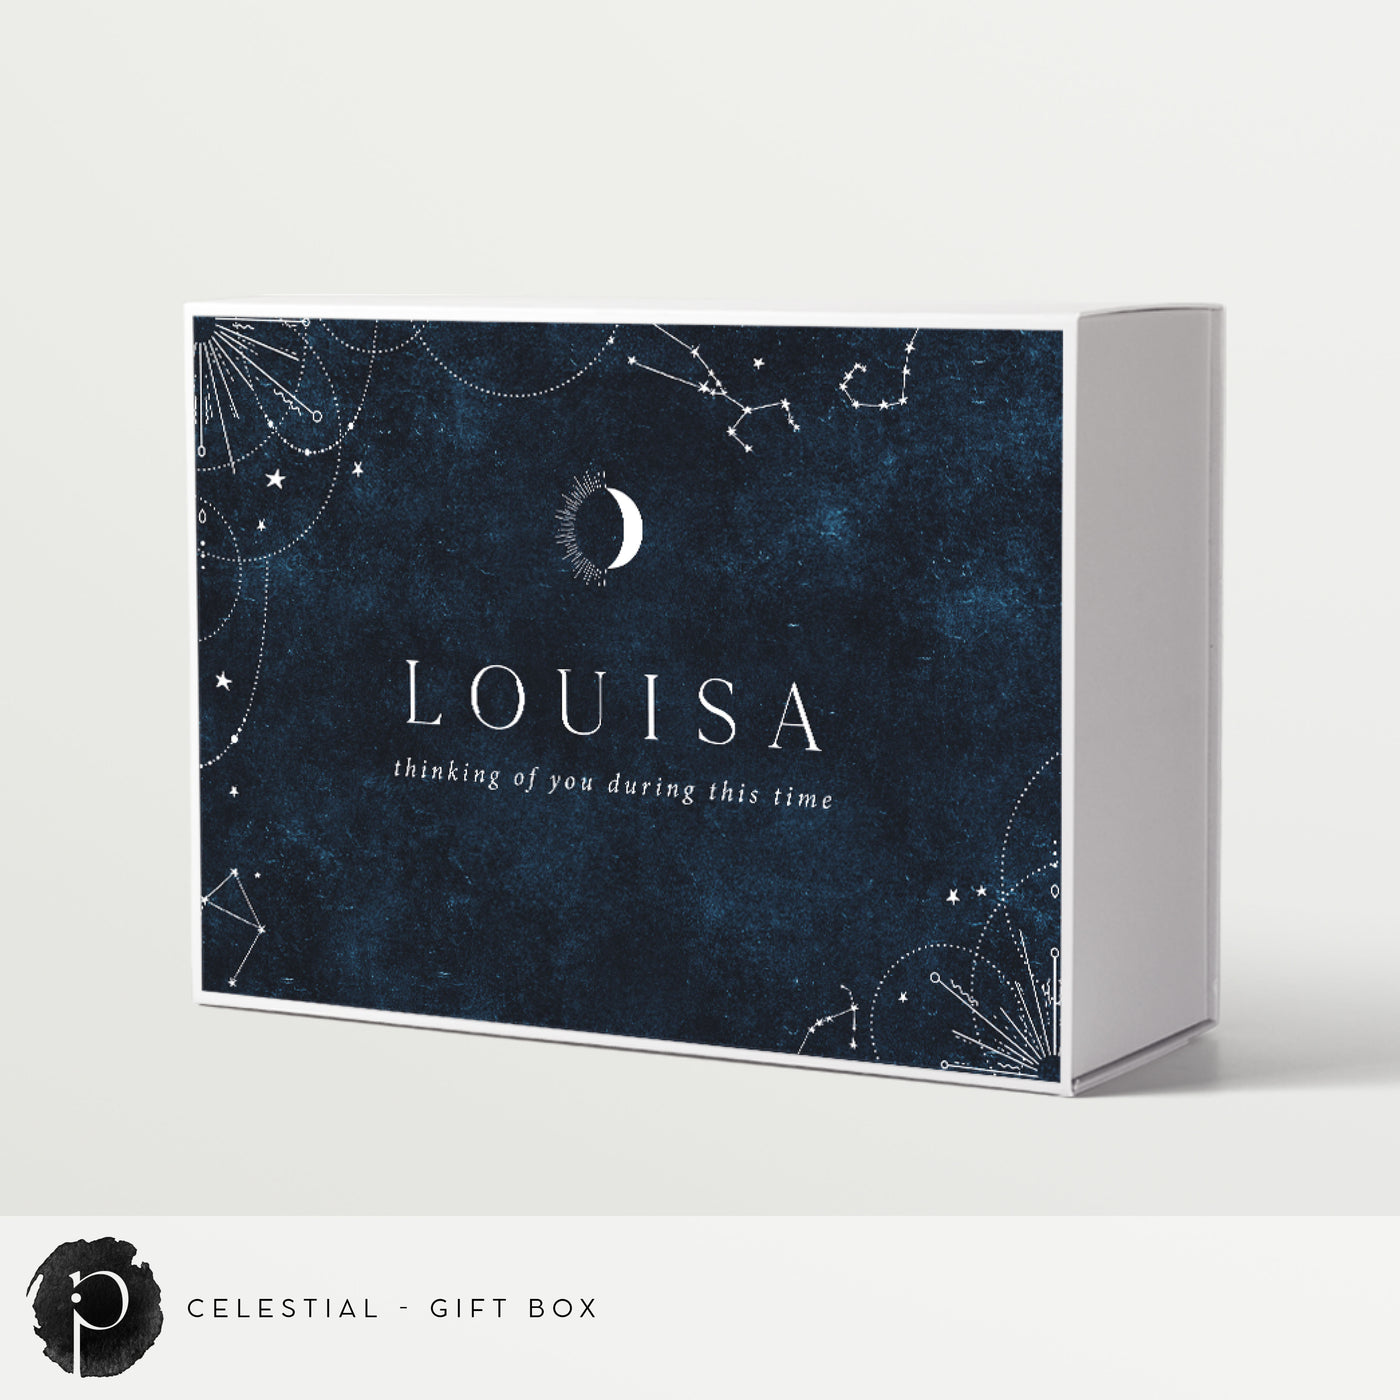 Celestial - Gift Box